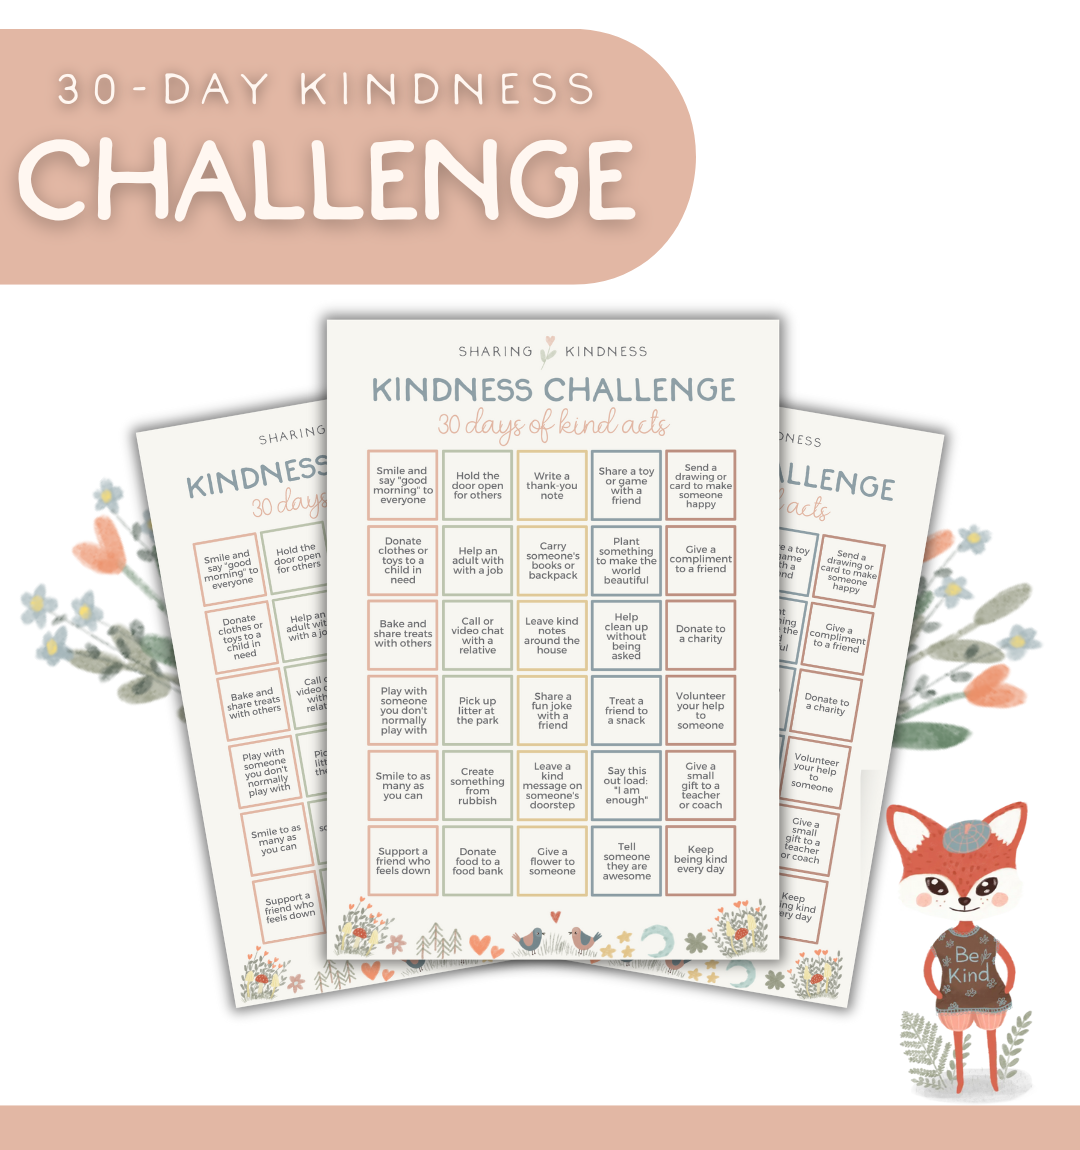 [PRINTABLE] 30-Day Kindness Challenge